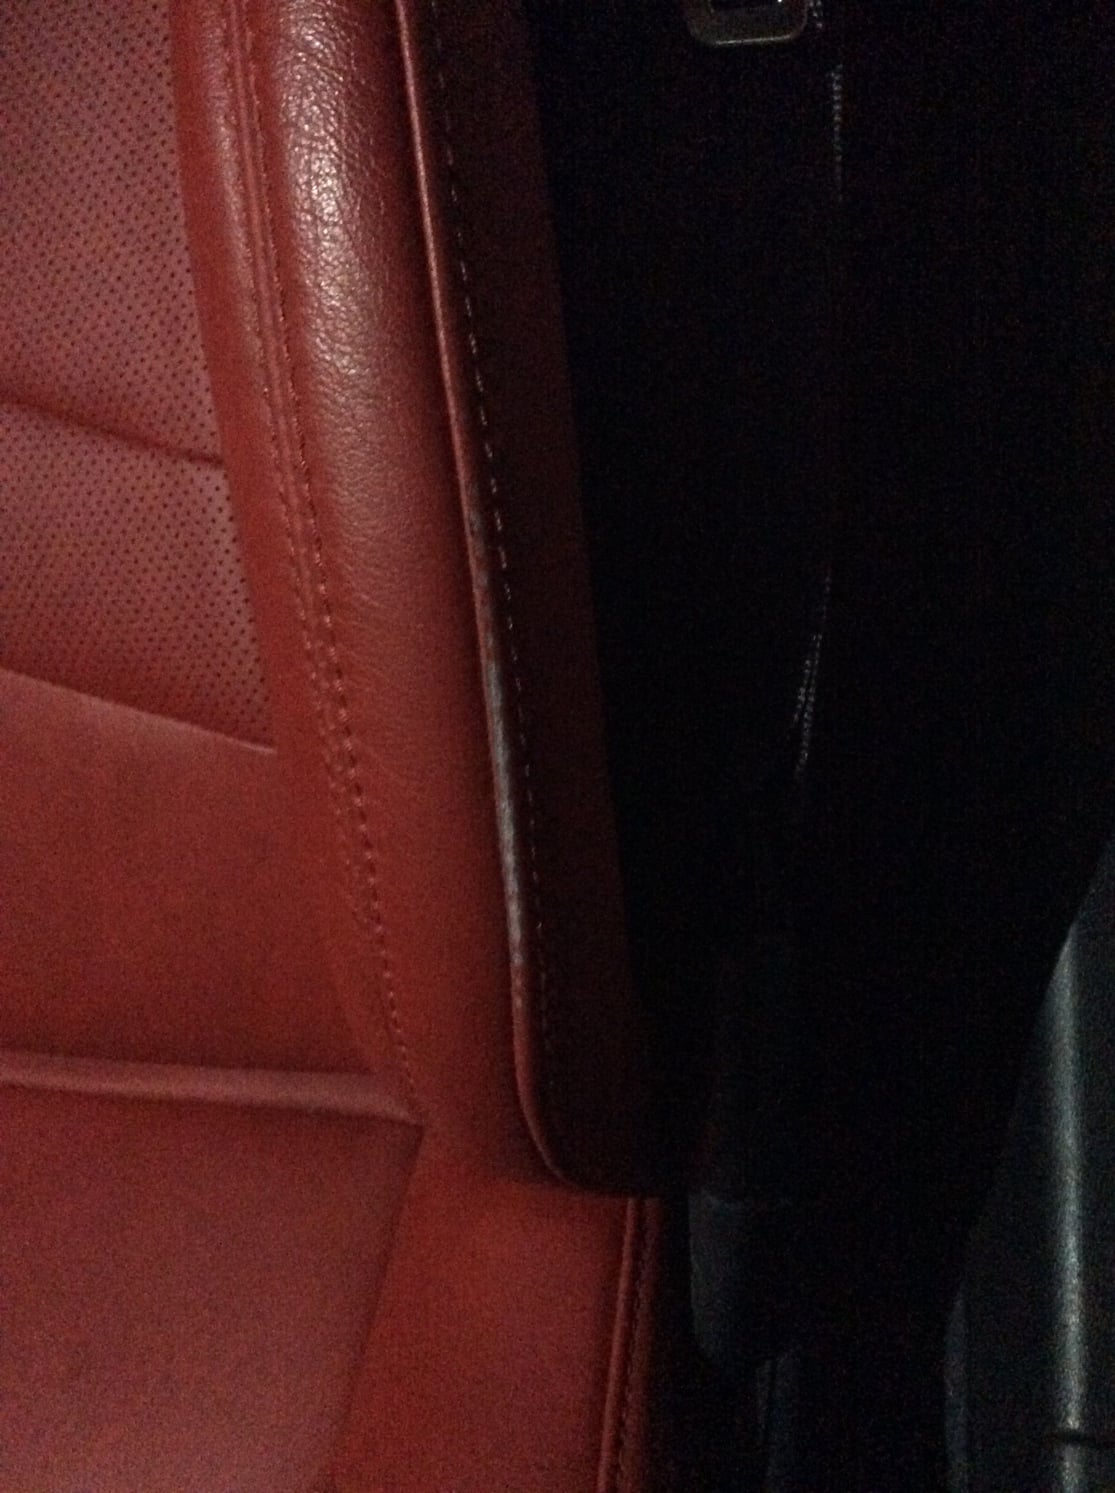 Leather Crack Filler — Seat Doctors